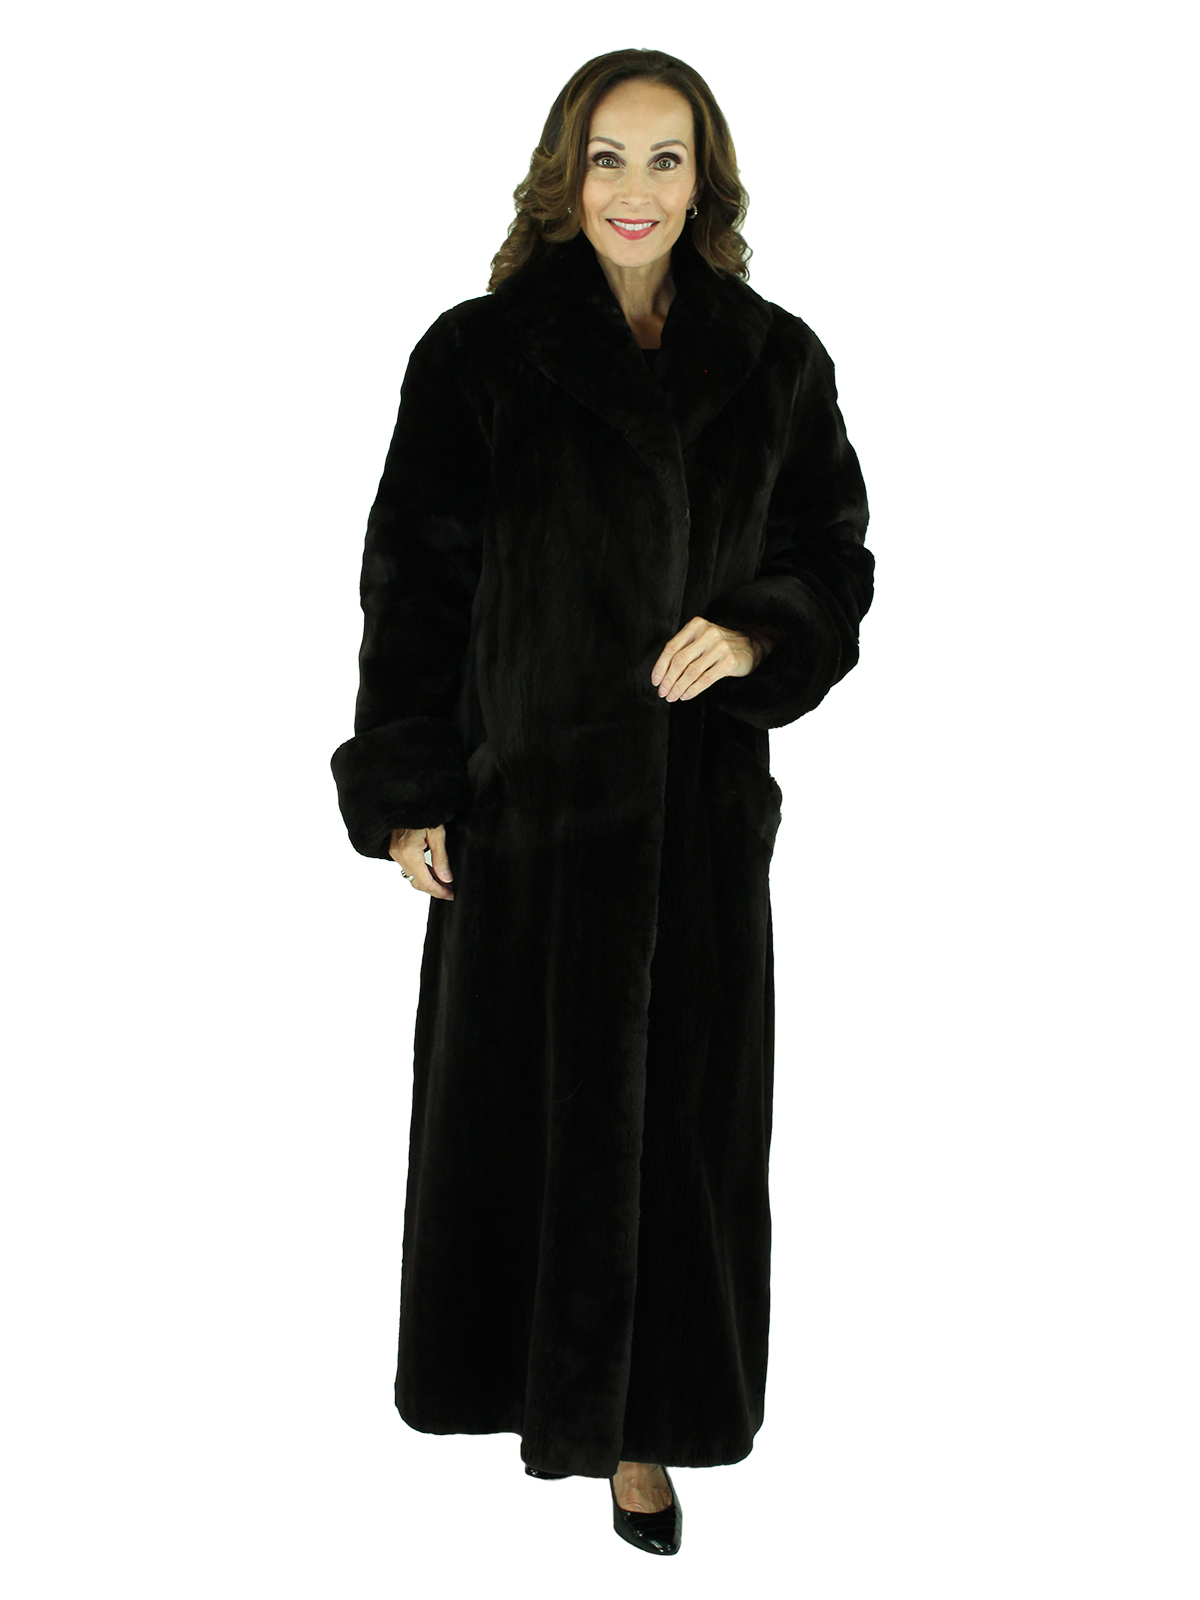 Matara Sheared Beaver Fur Coat - Women's Fur Coat - Medium| Estate Furs